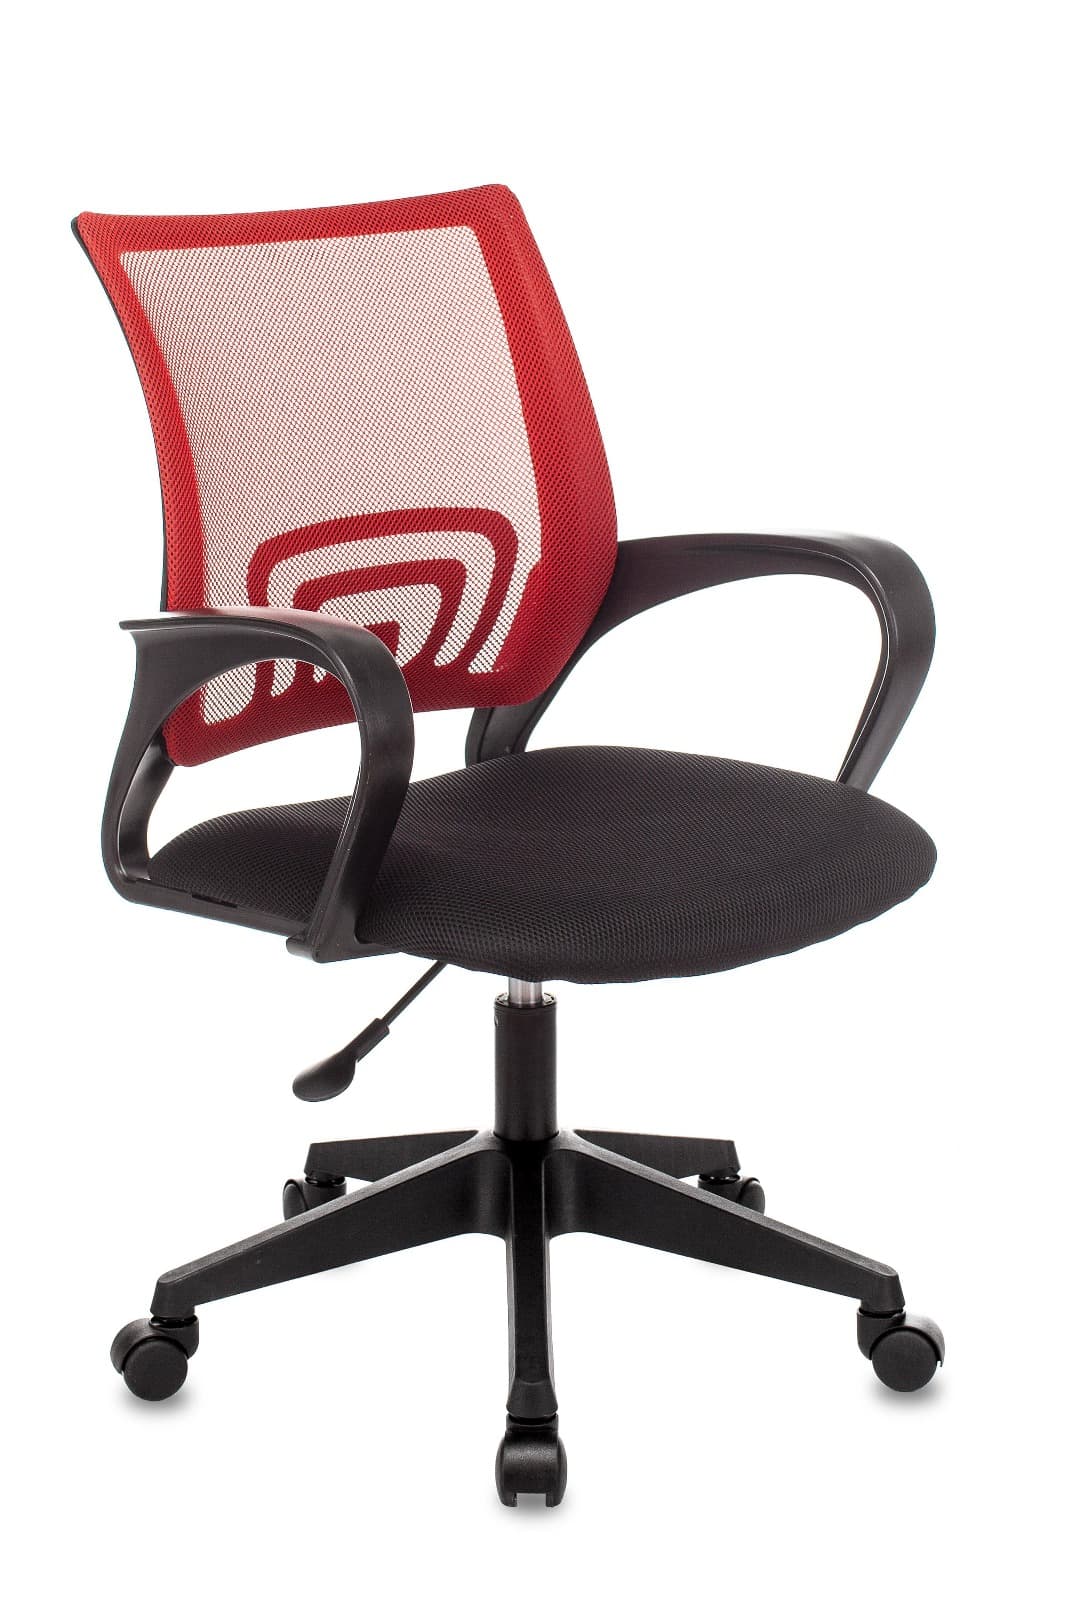 Компьютерное кресло ST-Basic офисное сетка/ткань красный крестовина пластик механизм Пиастра